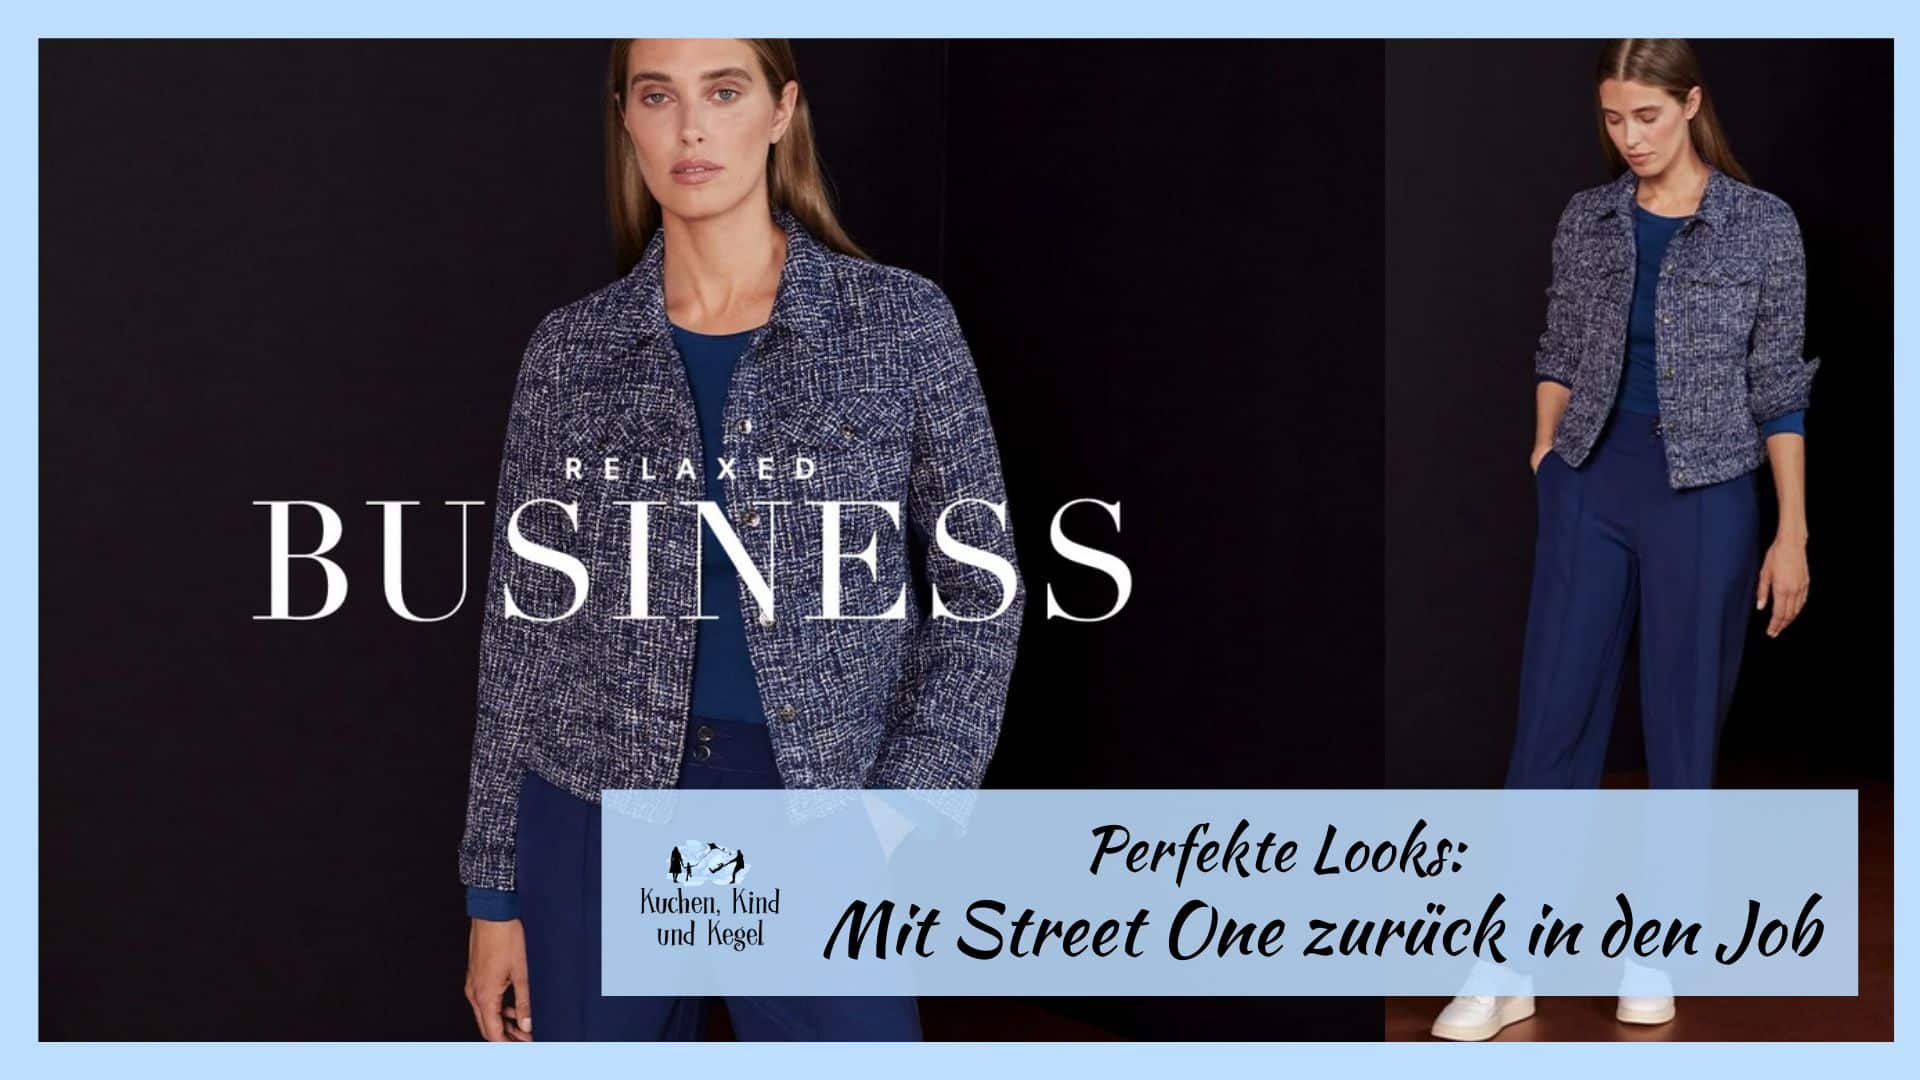 Perfekte Looks: Mit Street One zurück in den Job – 4 Outfit-Ideen für den Wiedereinstieg!